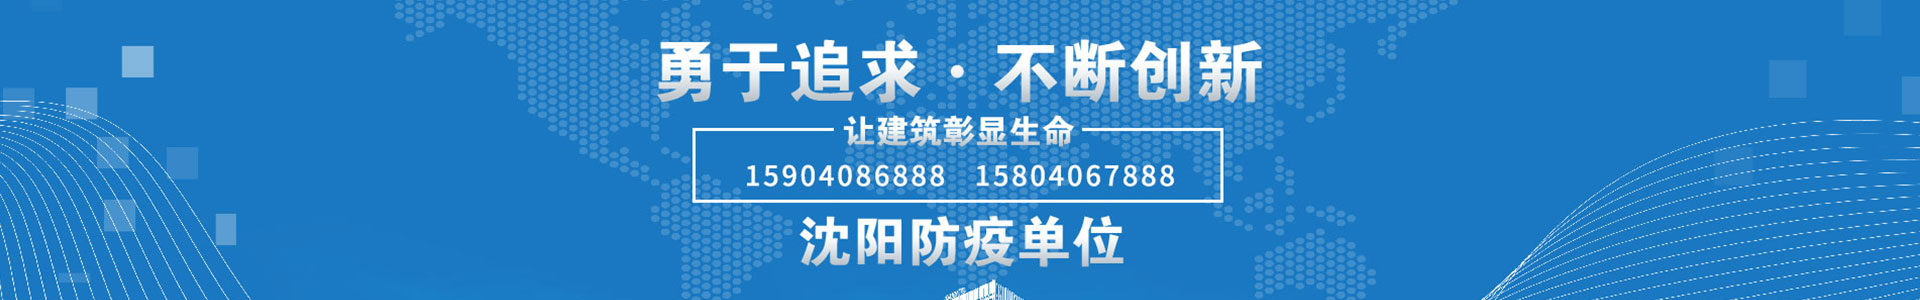 球赛下注官方网站(中国)有限公司